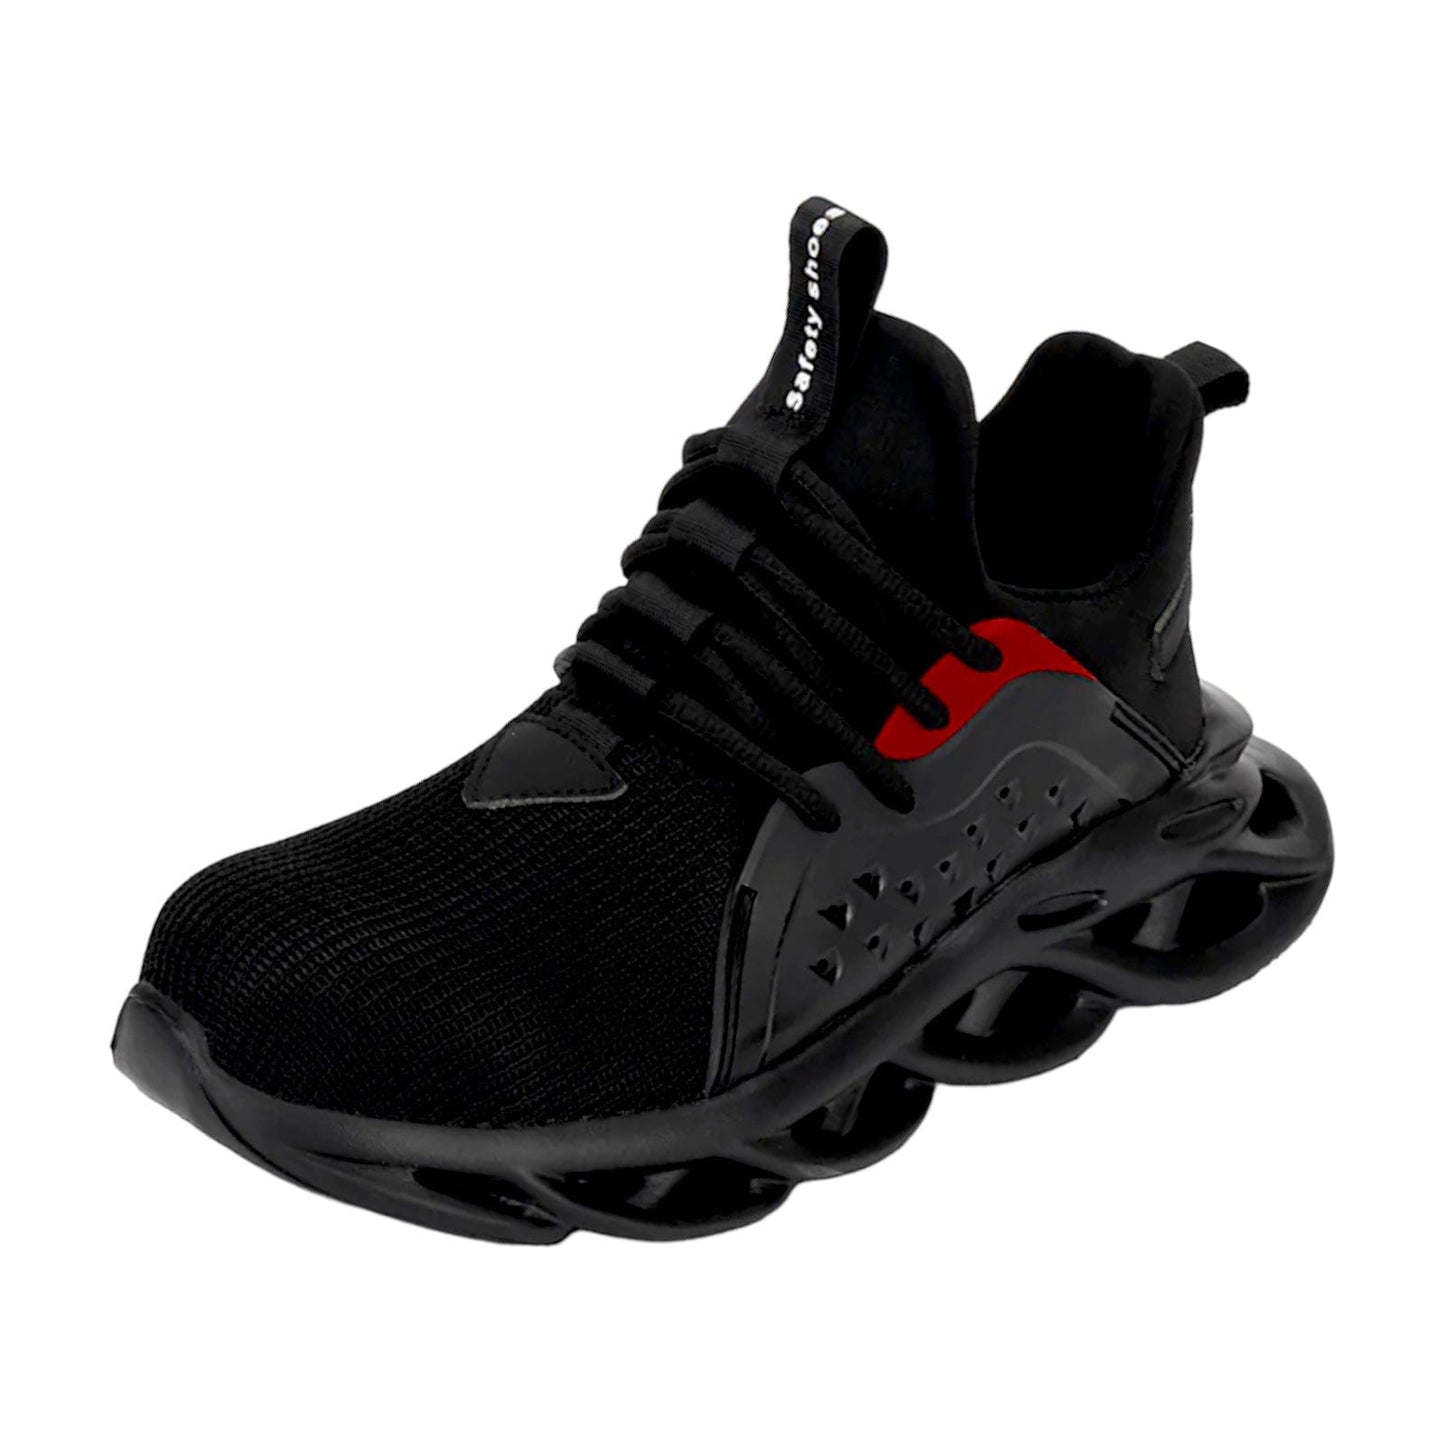 black red sneakers kraken flashlander indestructible men's footwear for work and lifestyle front side 